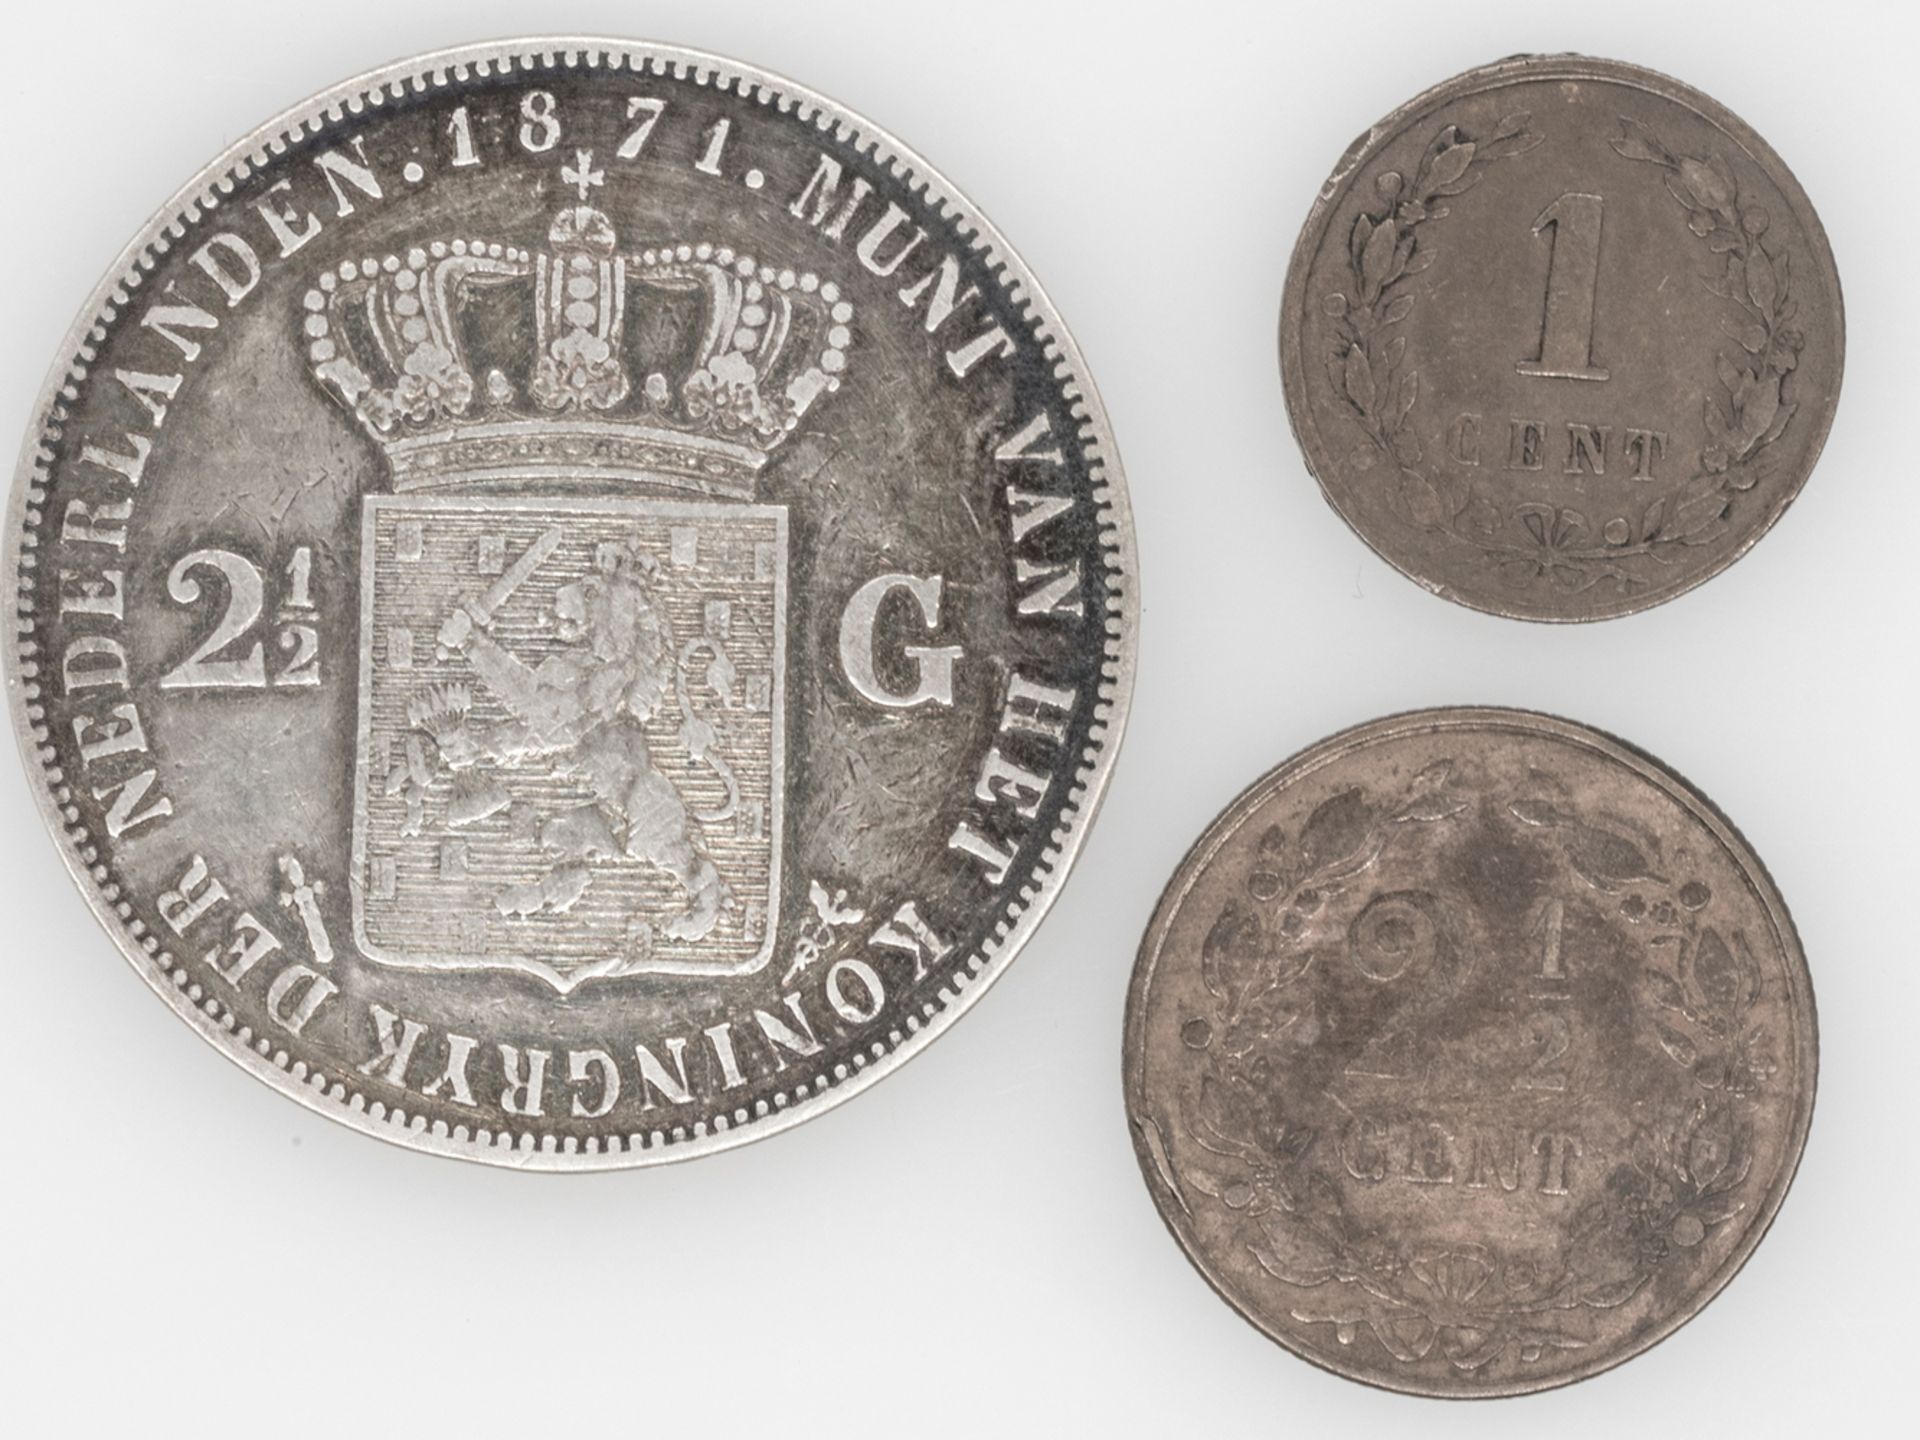 Niederlande 1871, 2 1/2 Gulden "Willem III.". Erhaltung: ss. Dazu 1881 2 1/2 Cent und 1878 1 Cent.